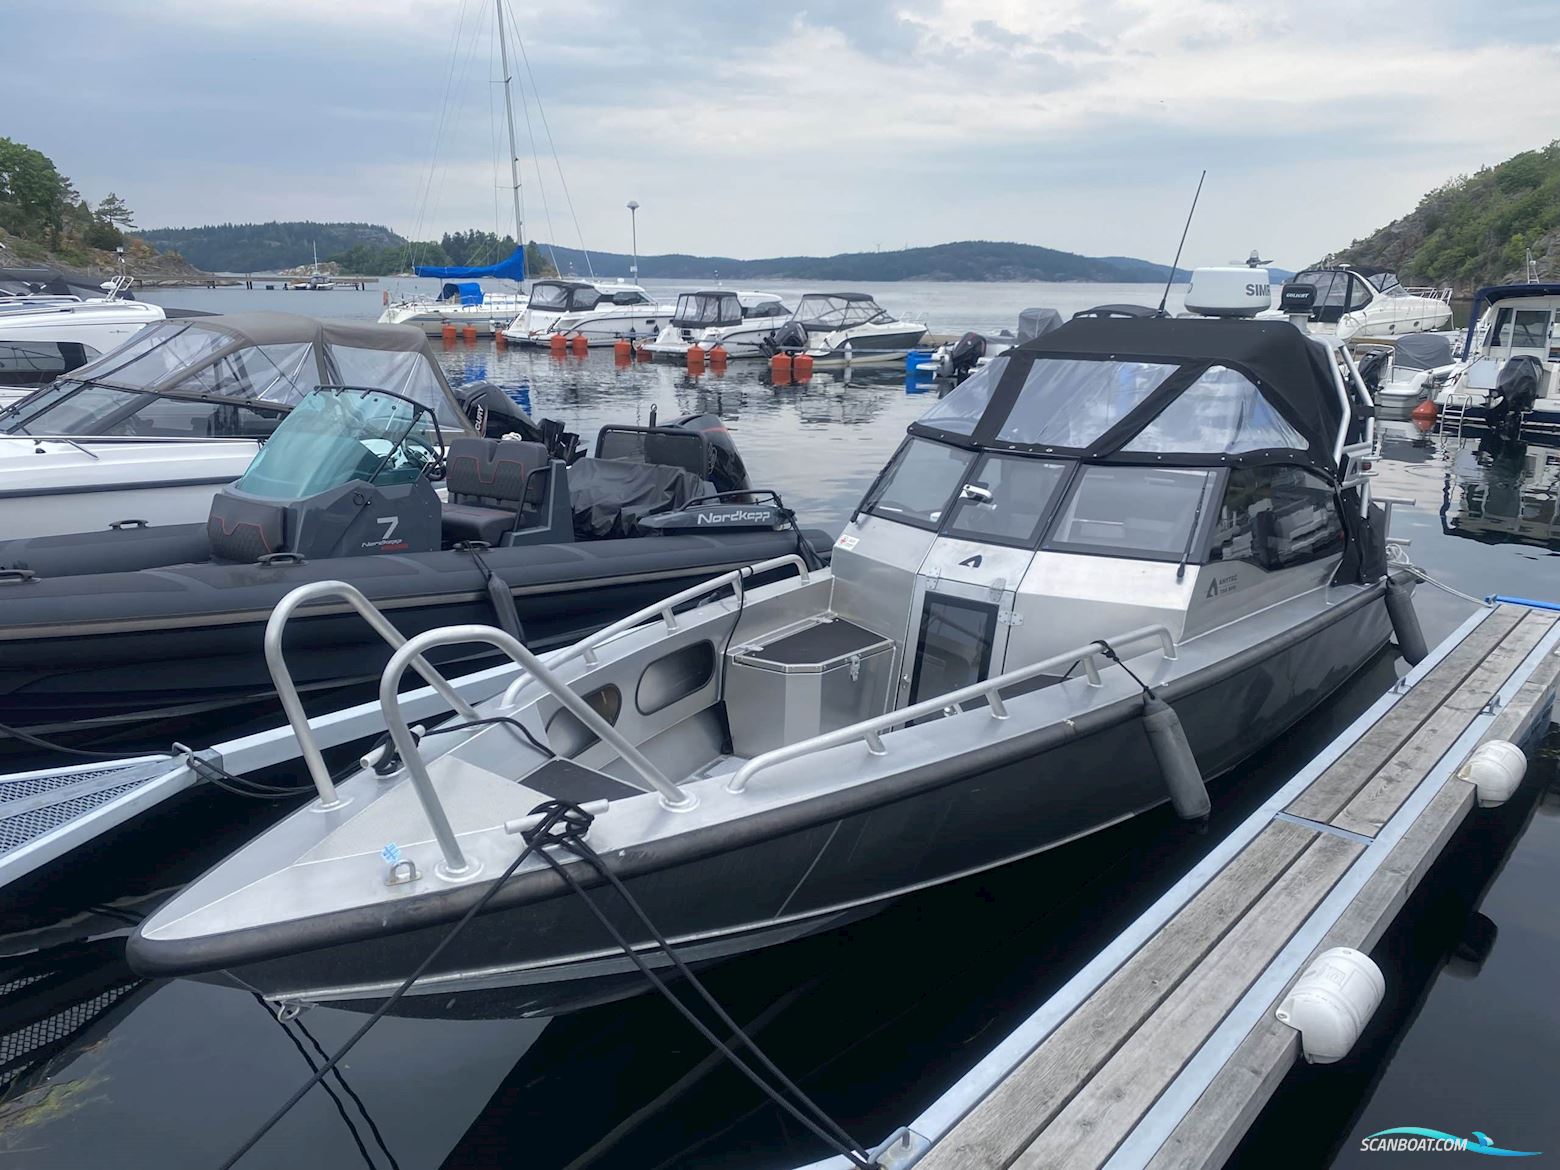 Anytec 750 Spd Motor boat 2015, with Mercury V8-300 hk engine, Sweden